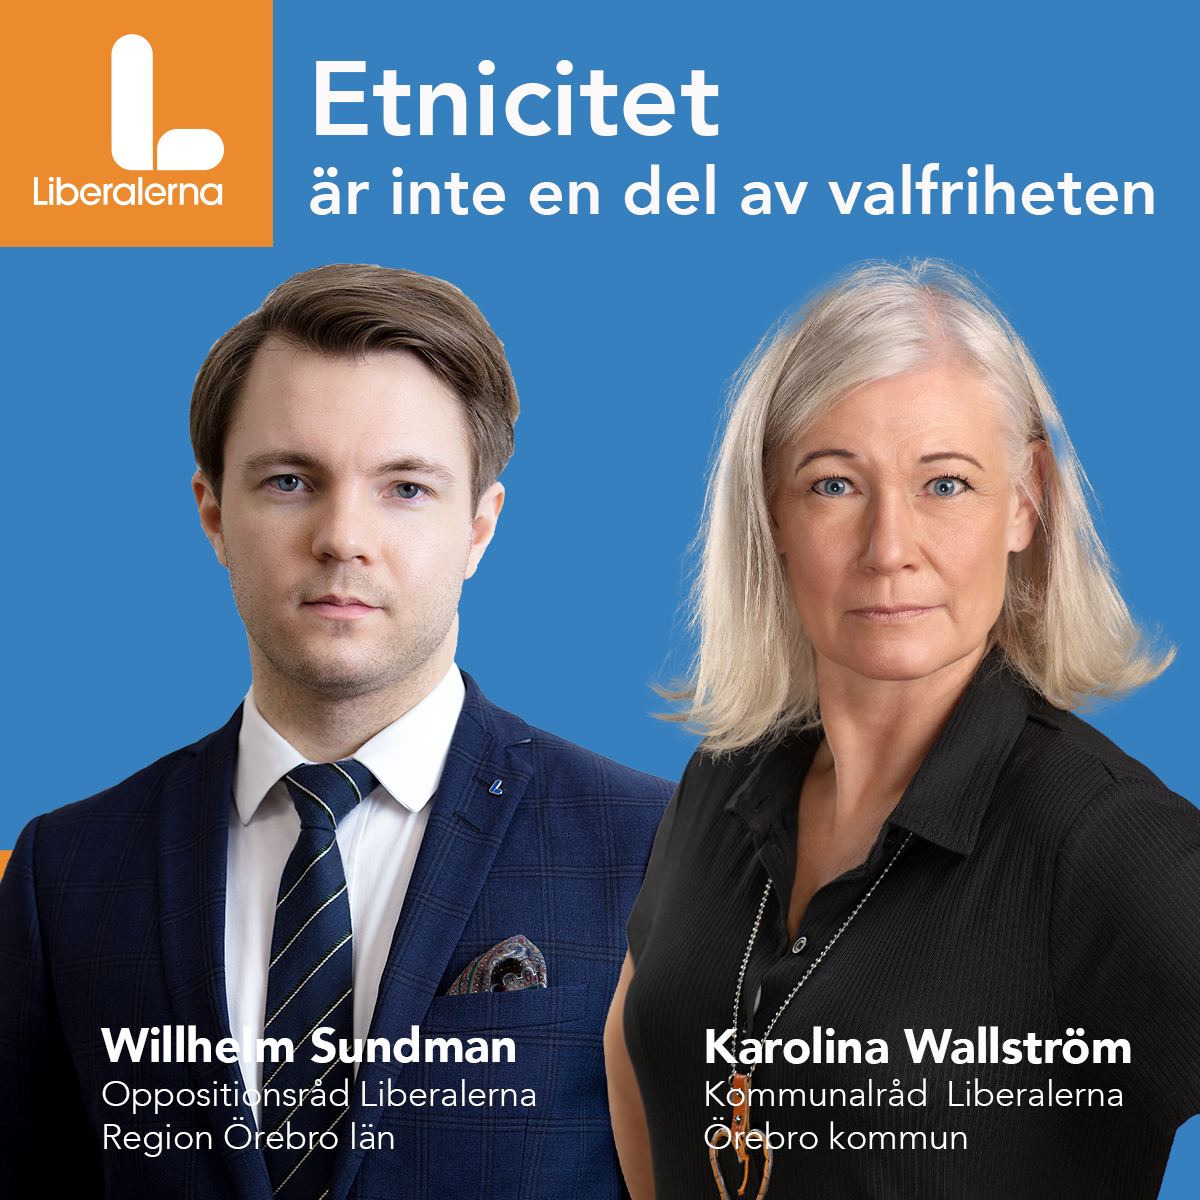 Willhelm Sundmanlhelm Sundman, Liberalerna, Karolina Wallström Kommunalråd